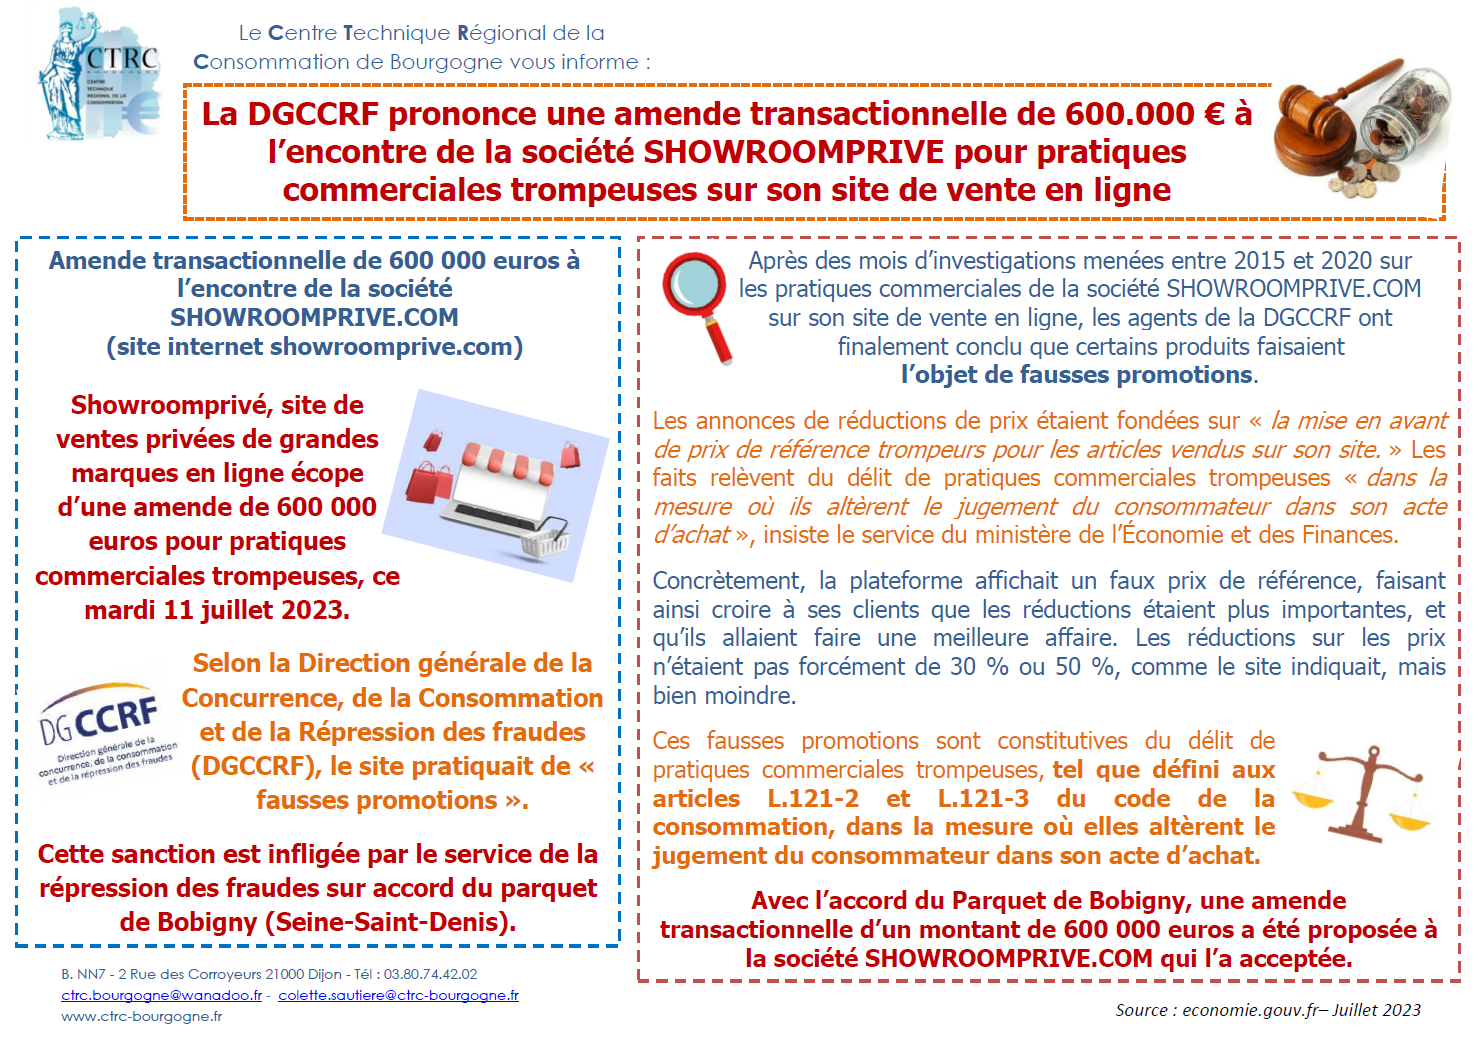 La DGCCRF prononce une amende transactionnelle de 600.000 € à l’encontre de la société SHOWROOMPRIVE pour pratiques commerciales trompeuses sur son site de vente en ligne - CTRC de Bourgogne - Juillet 2023